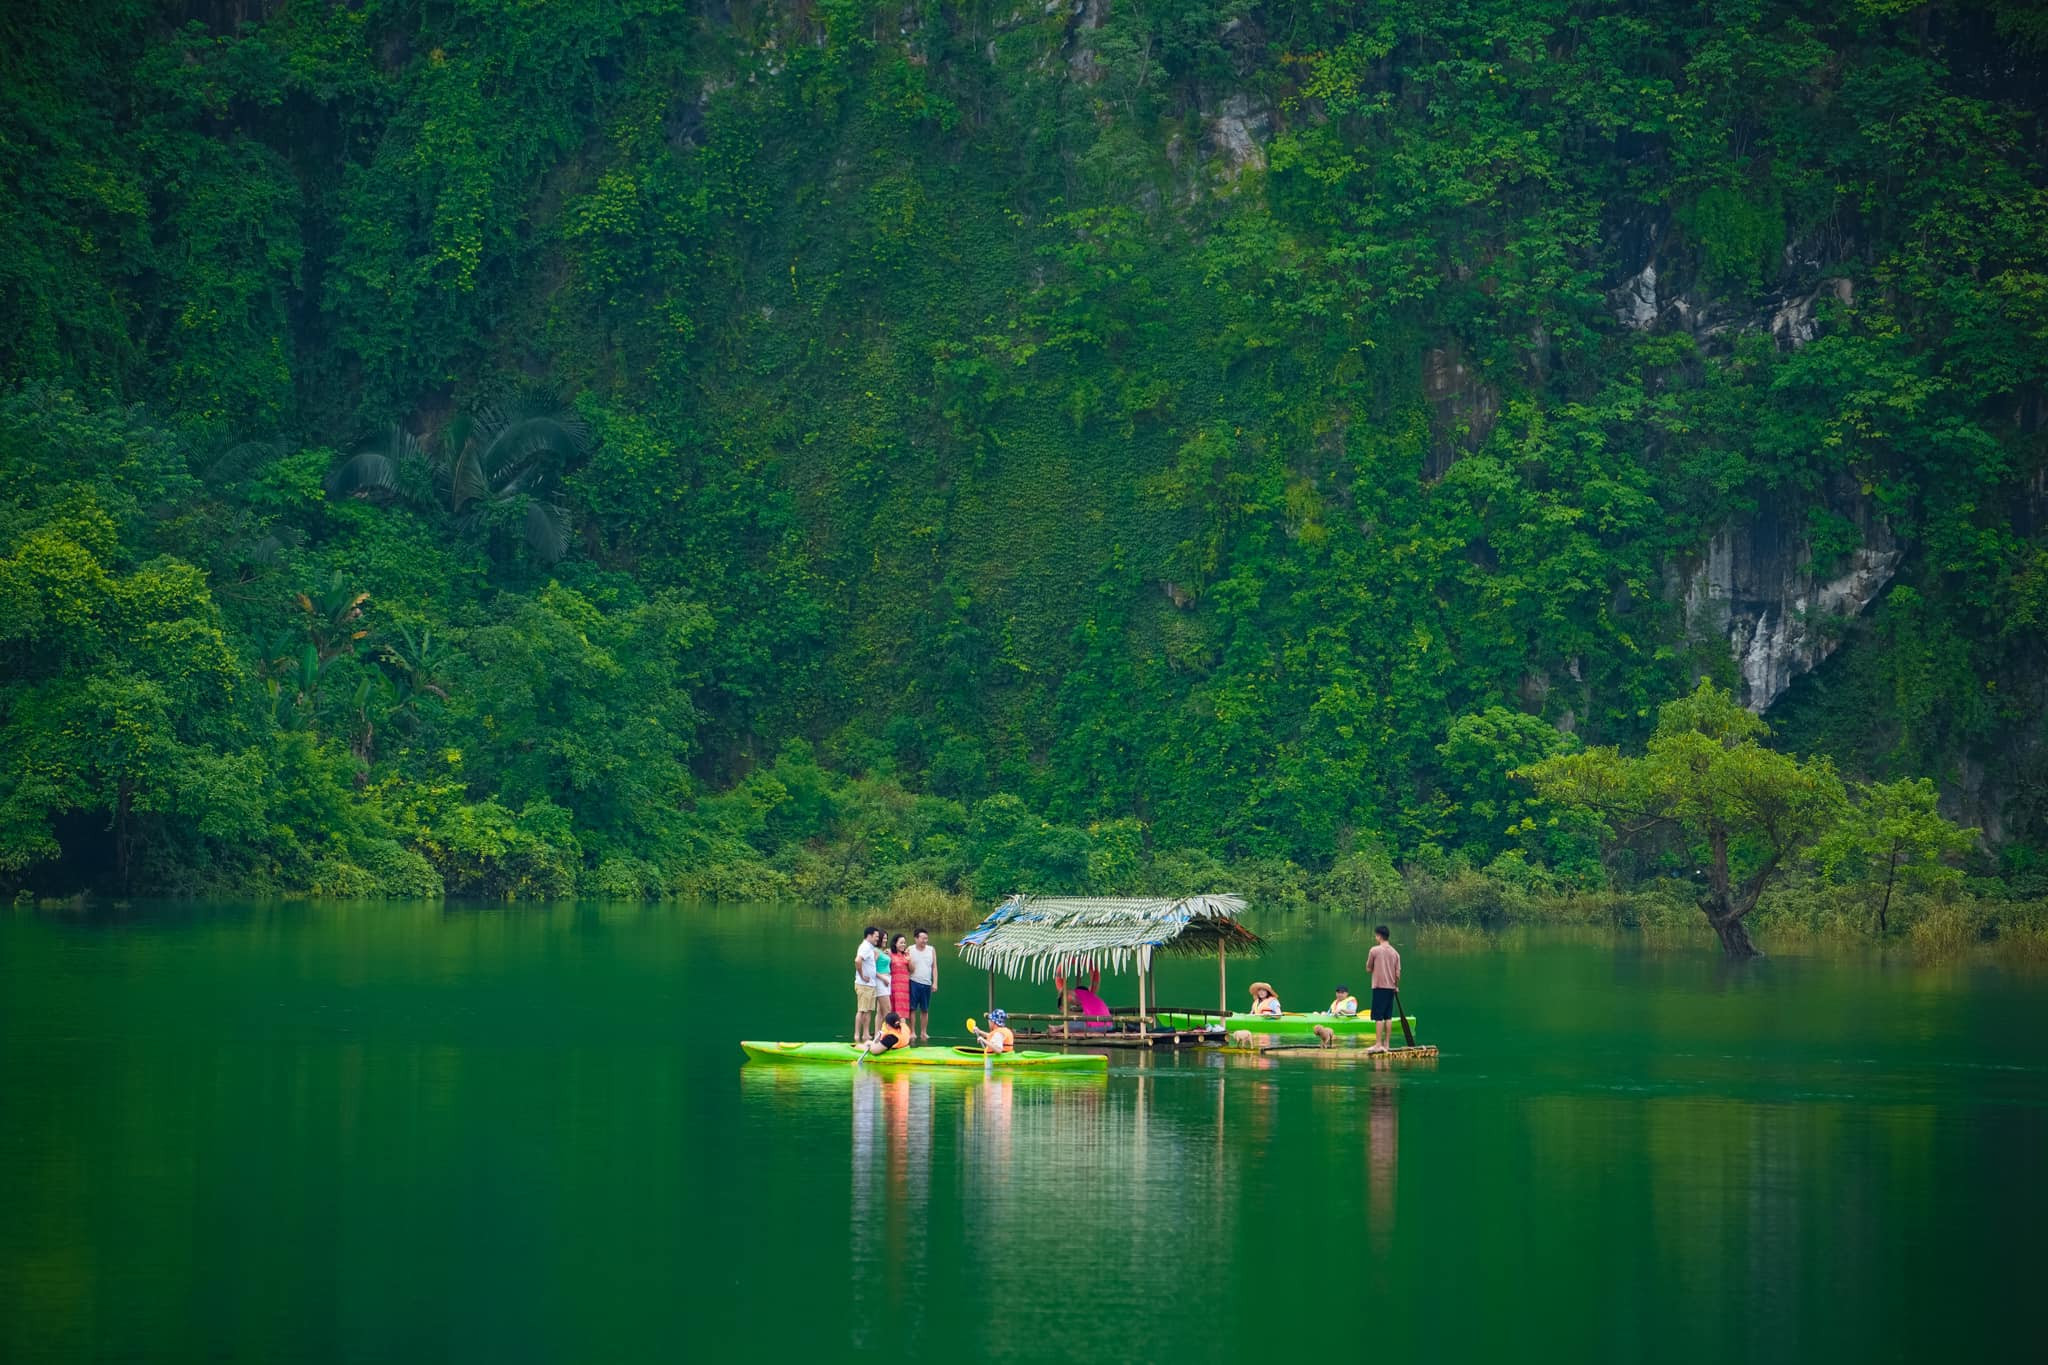 Thung lũng xanh cách Hà Nội 130km, khách tới ăn đặc sản, cắm trại, chèo thuyền